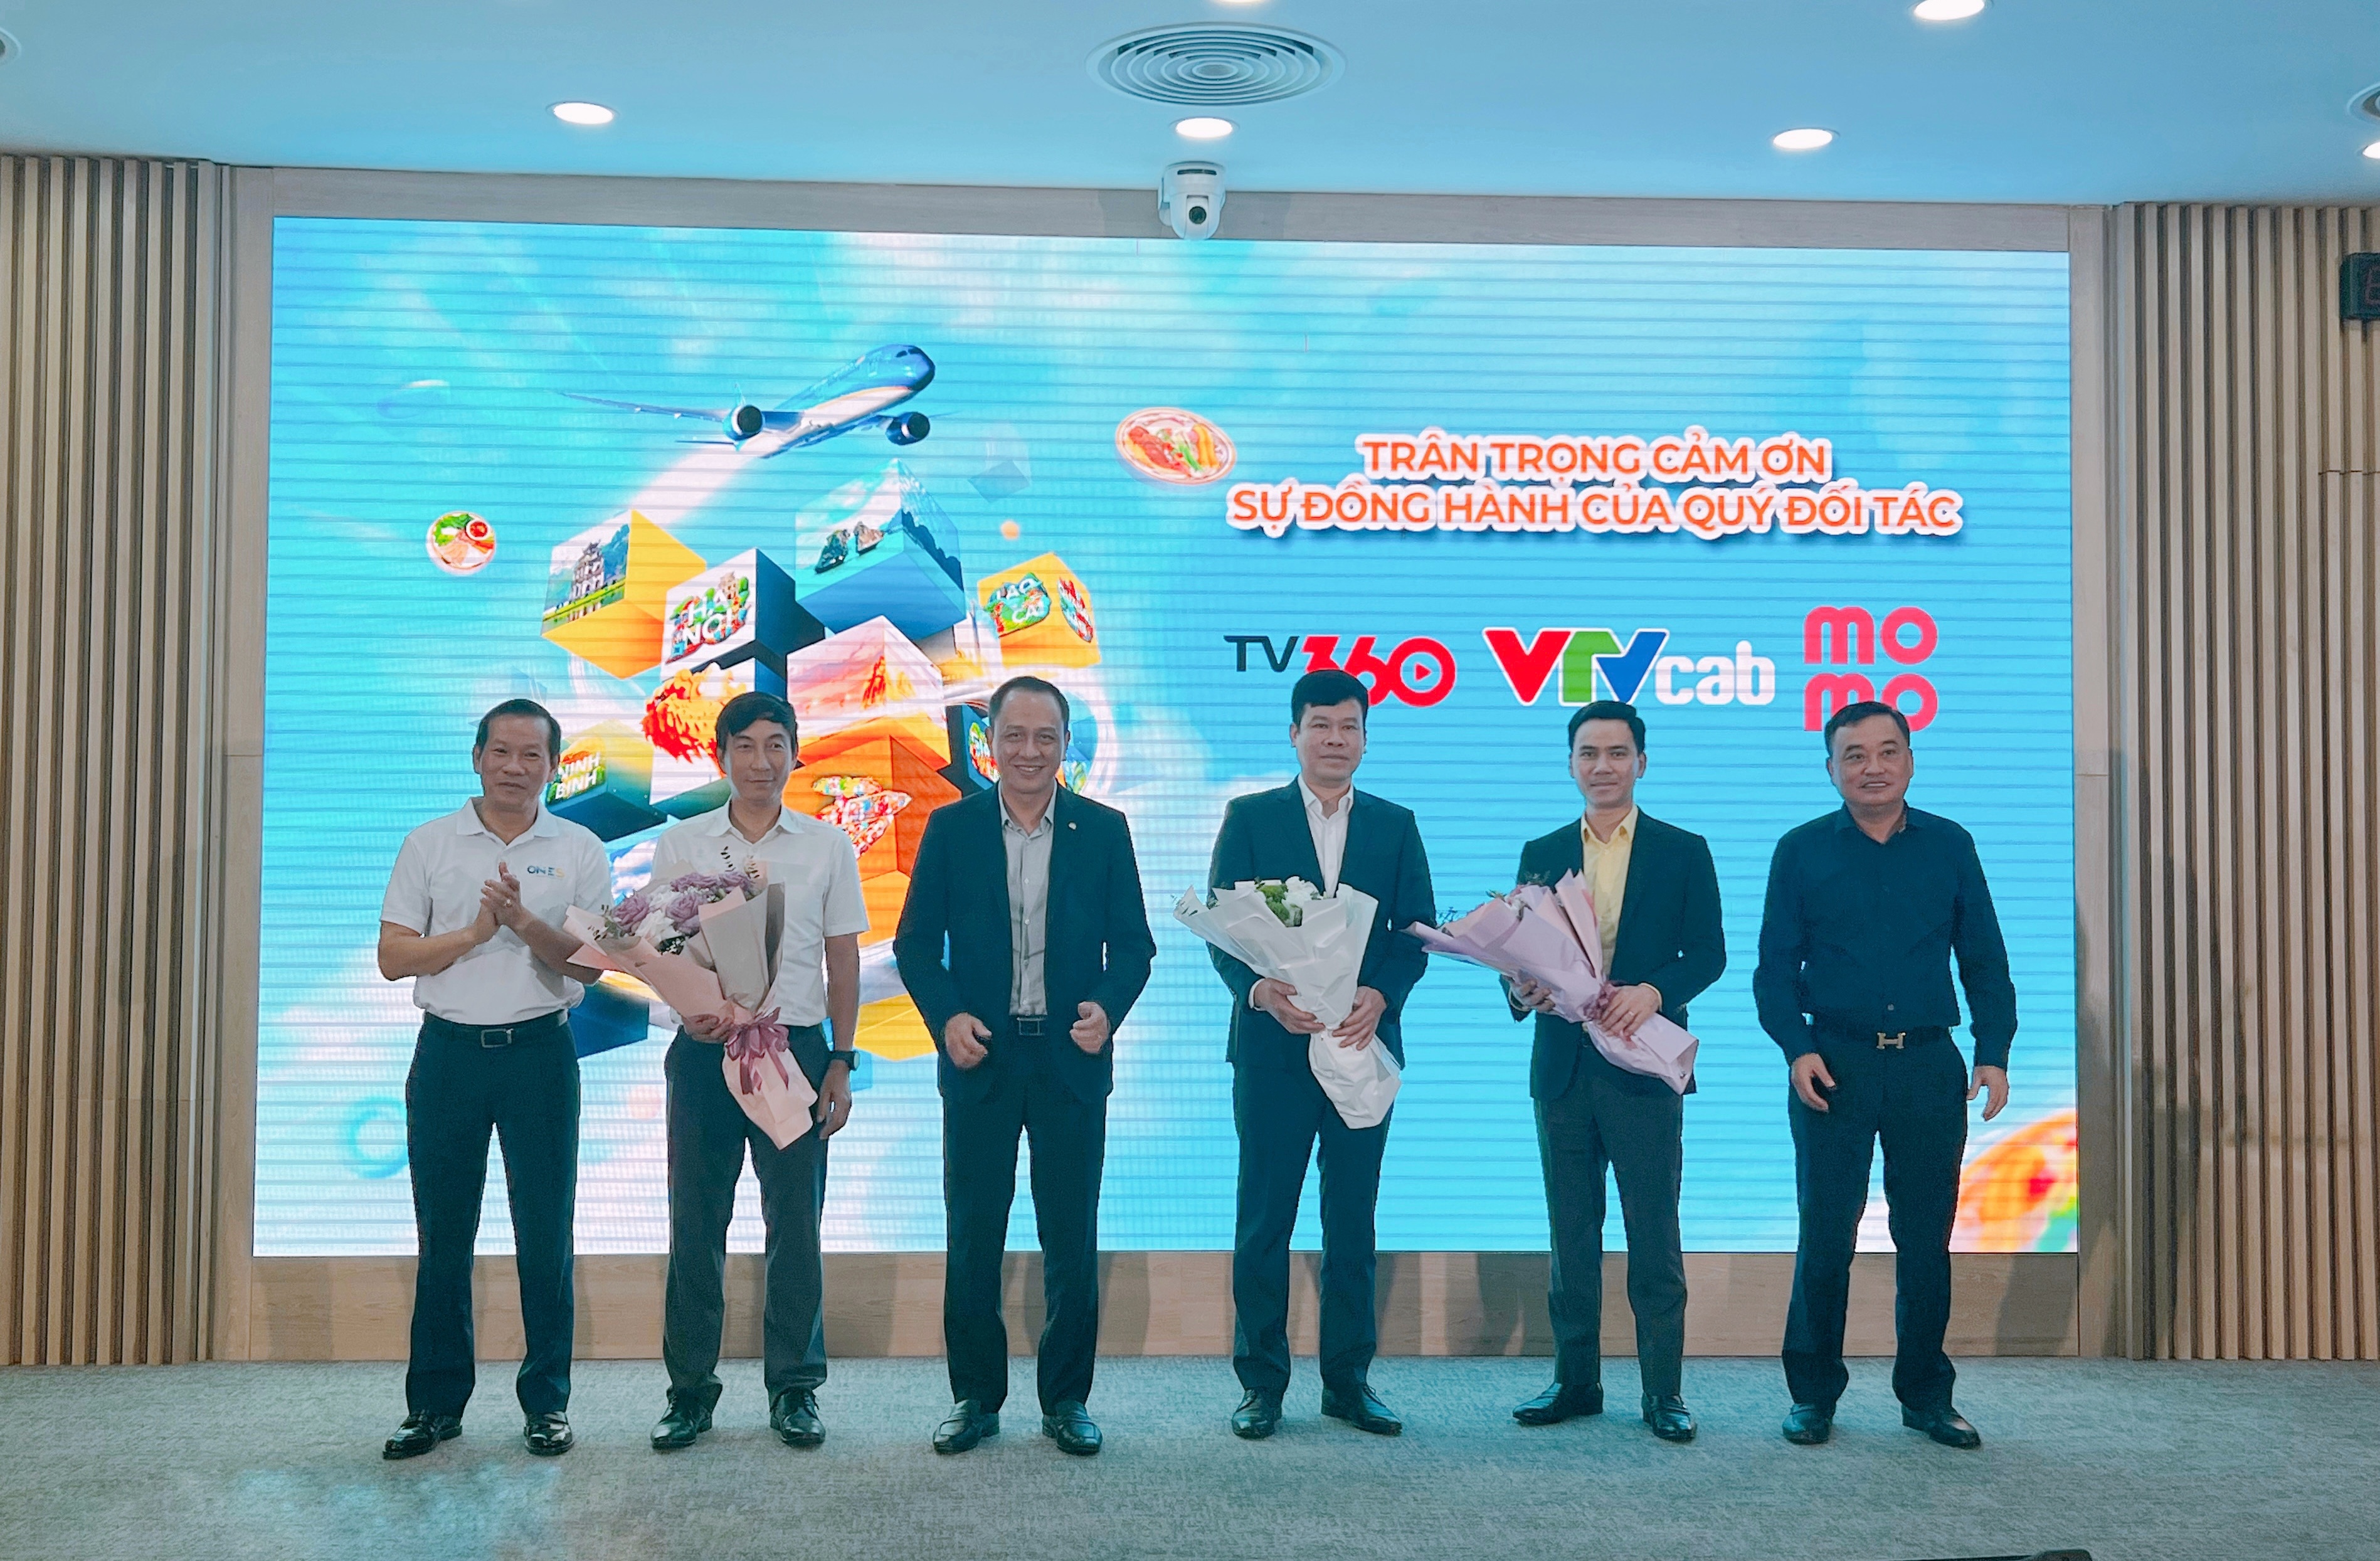 Vietnam Airlines mở trạm văn hóa đầu tiên trong chương trình One S - ảnh 2